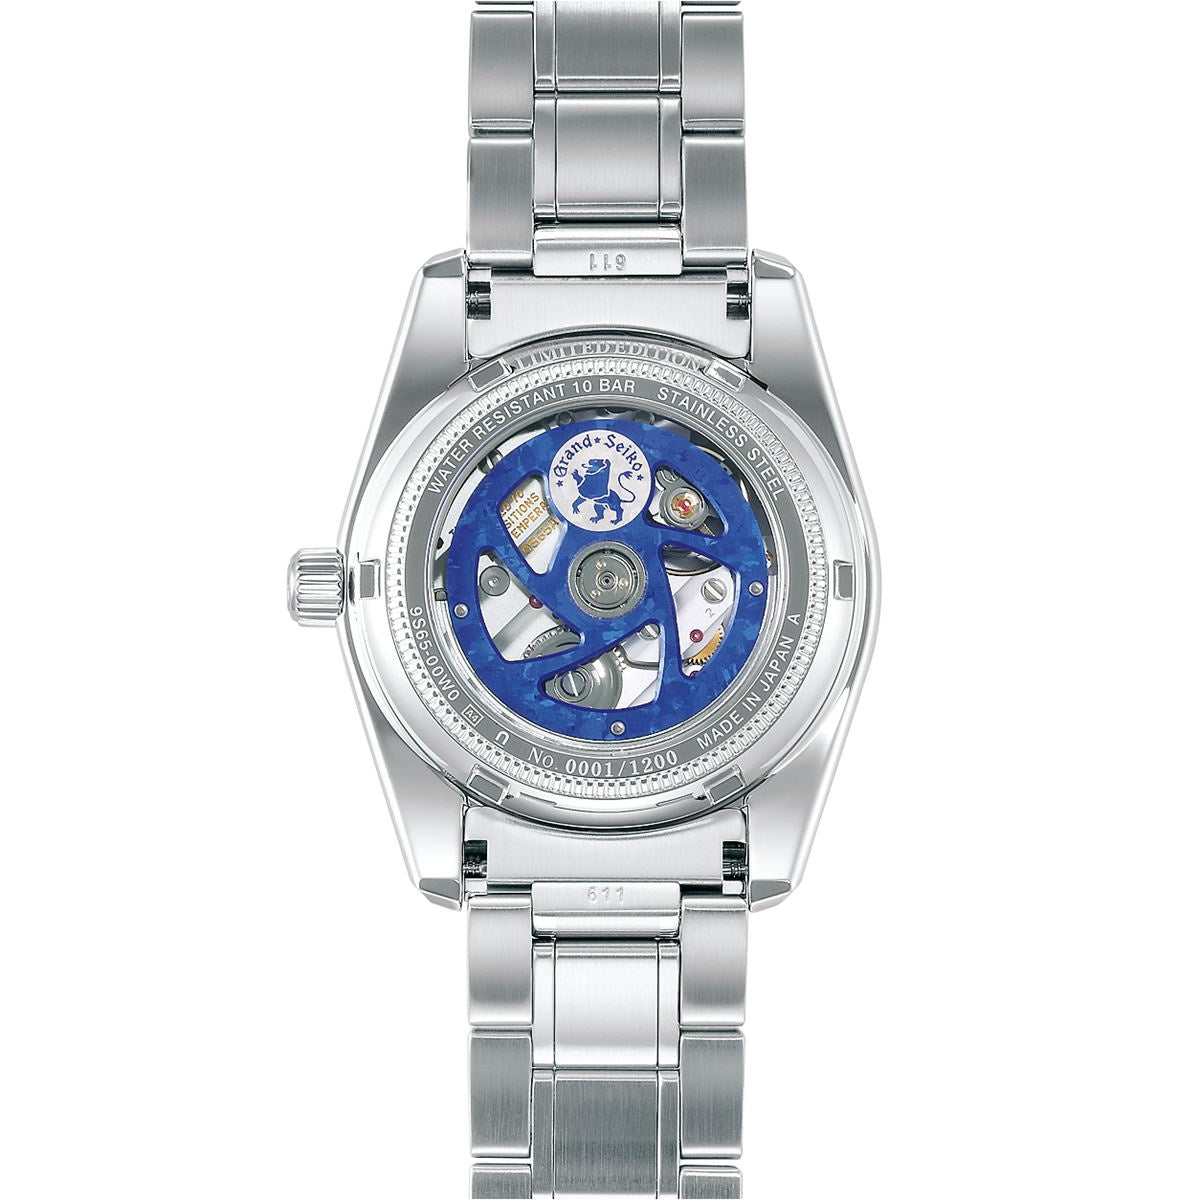 グランドセイコー GRAND SEIKO 自動巻き メカニカル 腕時計 メンズ Heritage Collection キャリバー9S 25周年記念限定モデル SBGR325